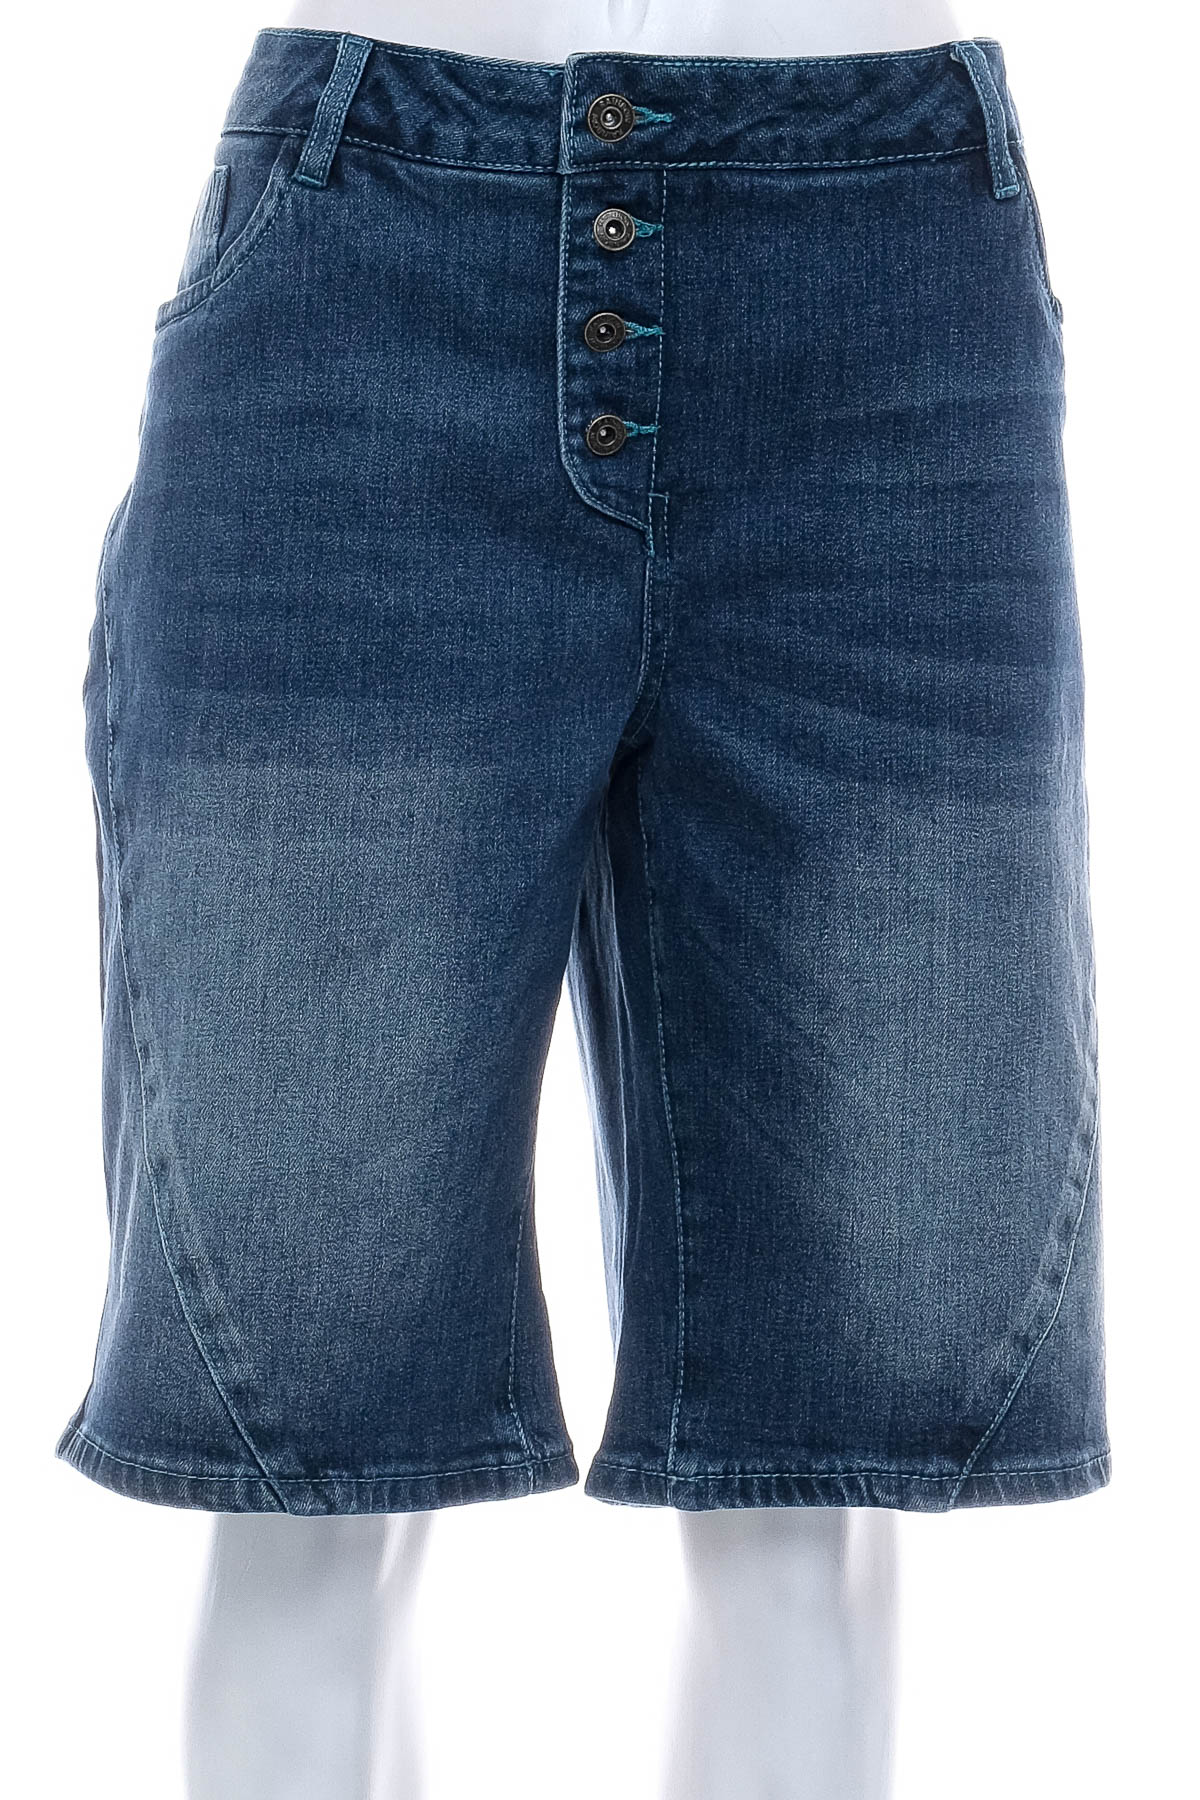 Female shorts - RAINBOW - 0